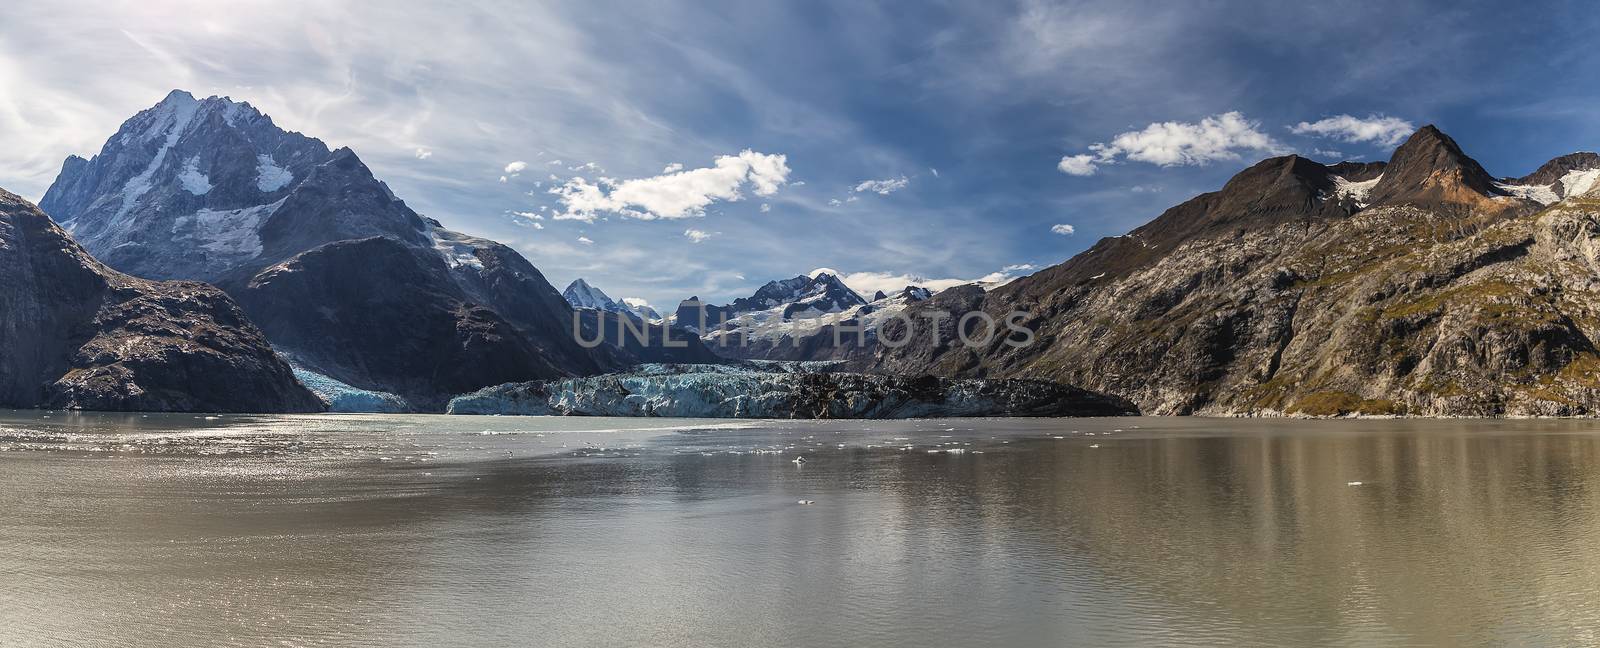 Panorama of Johns Hopkins glacier in Glacier Bay by DamantisZ